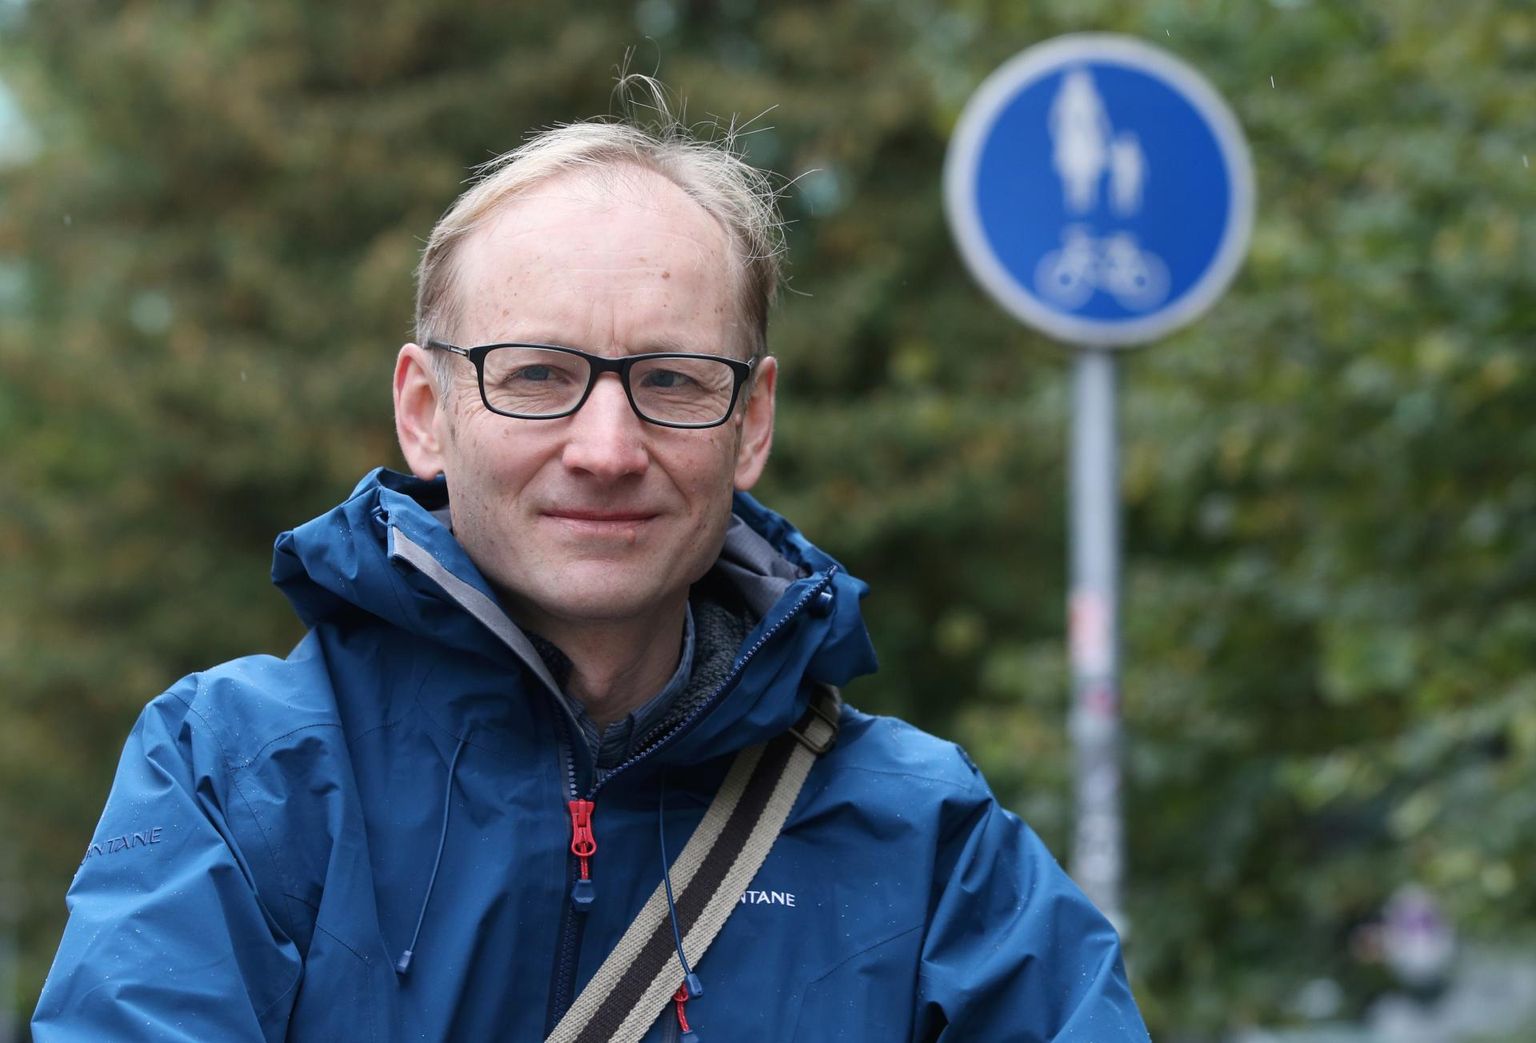 Eesti 200 nimekirjas kandideerib linnavolikokku Tartu ülikooli mõtteloo professor Pärtel Piirimäe.